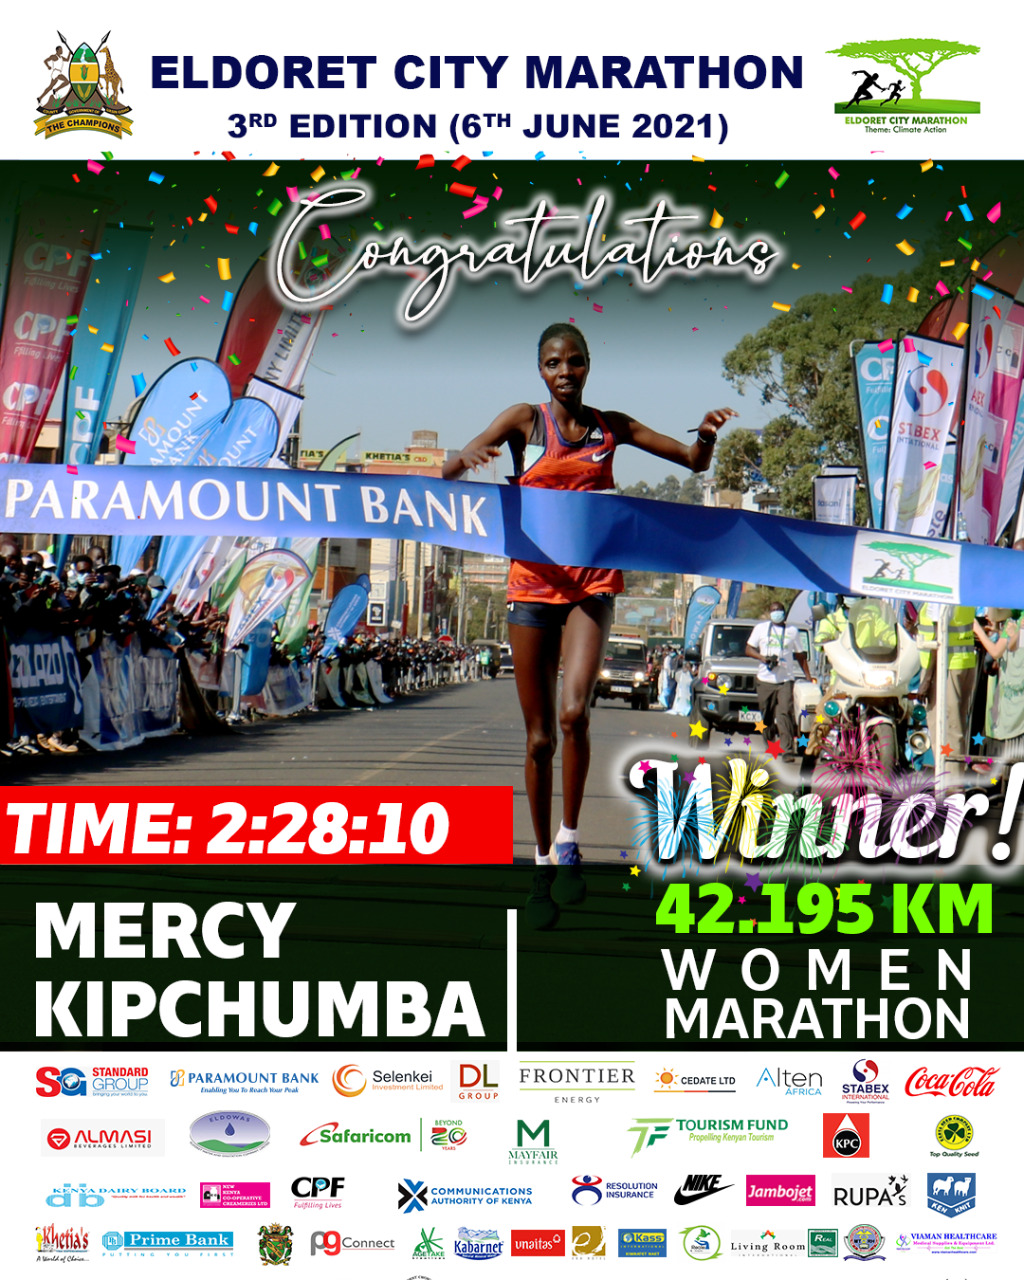 Eldoret City Marathon 2021